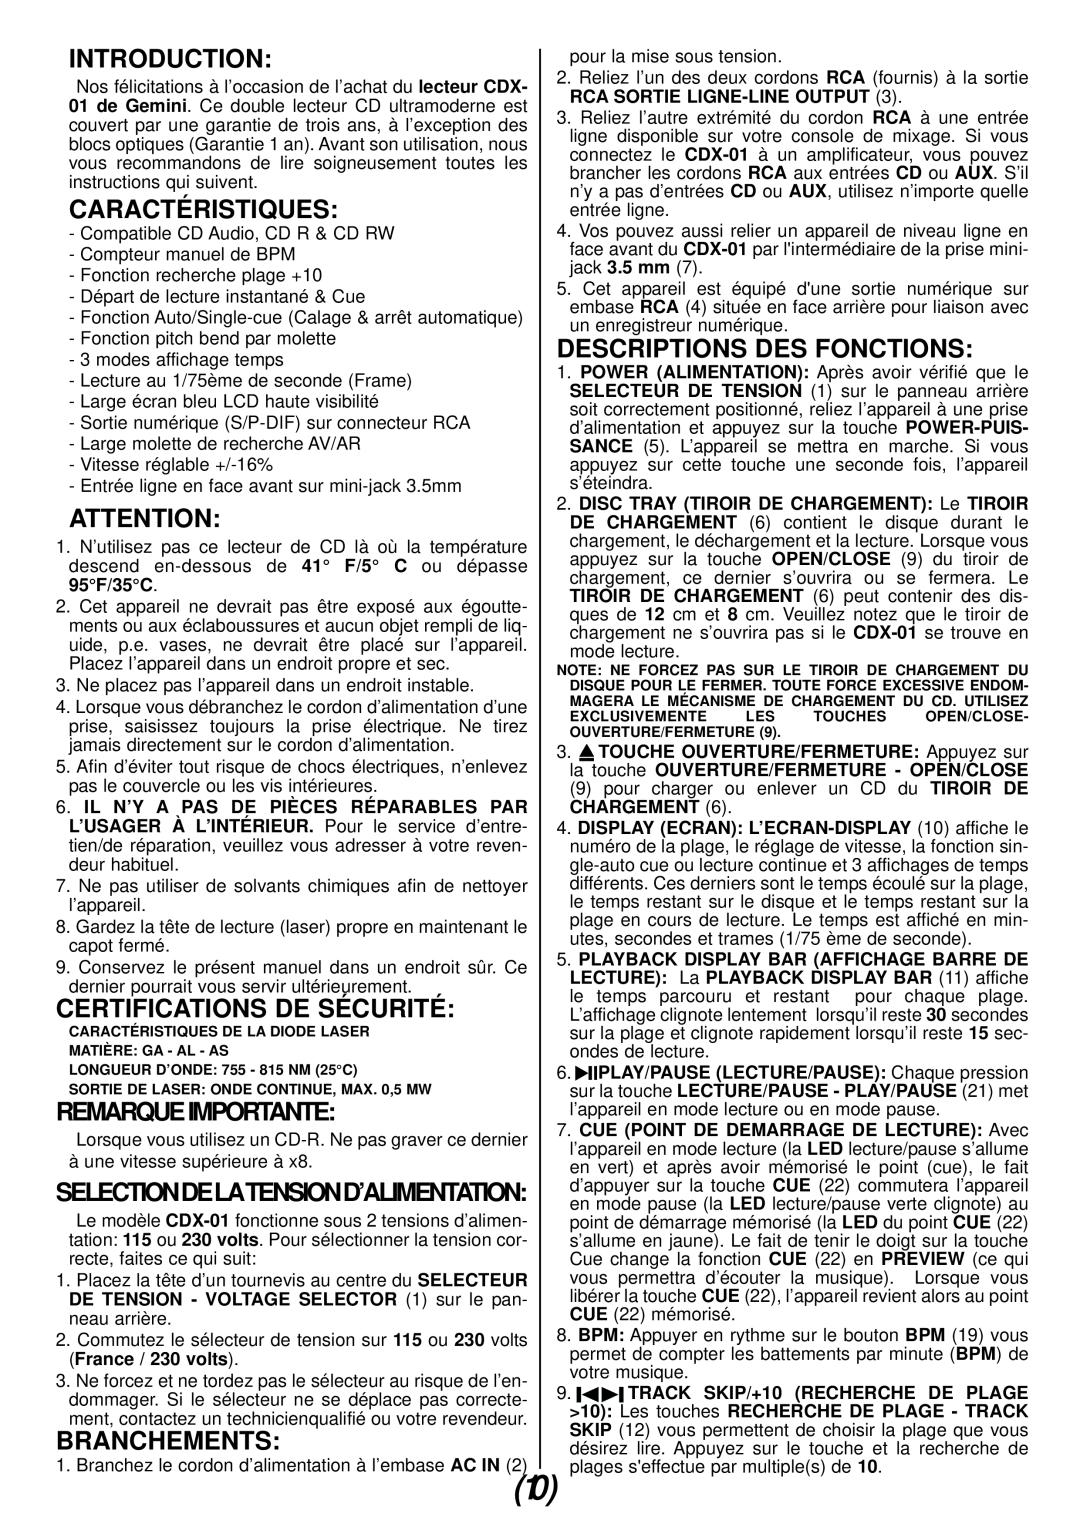 Gemini CDX-01 Caractéristiques, Certifications De Sécurité, Remarqueimportante, Branchements, Descriptions Des Fonctions 